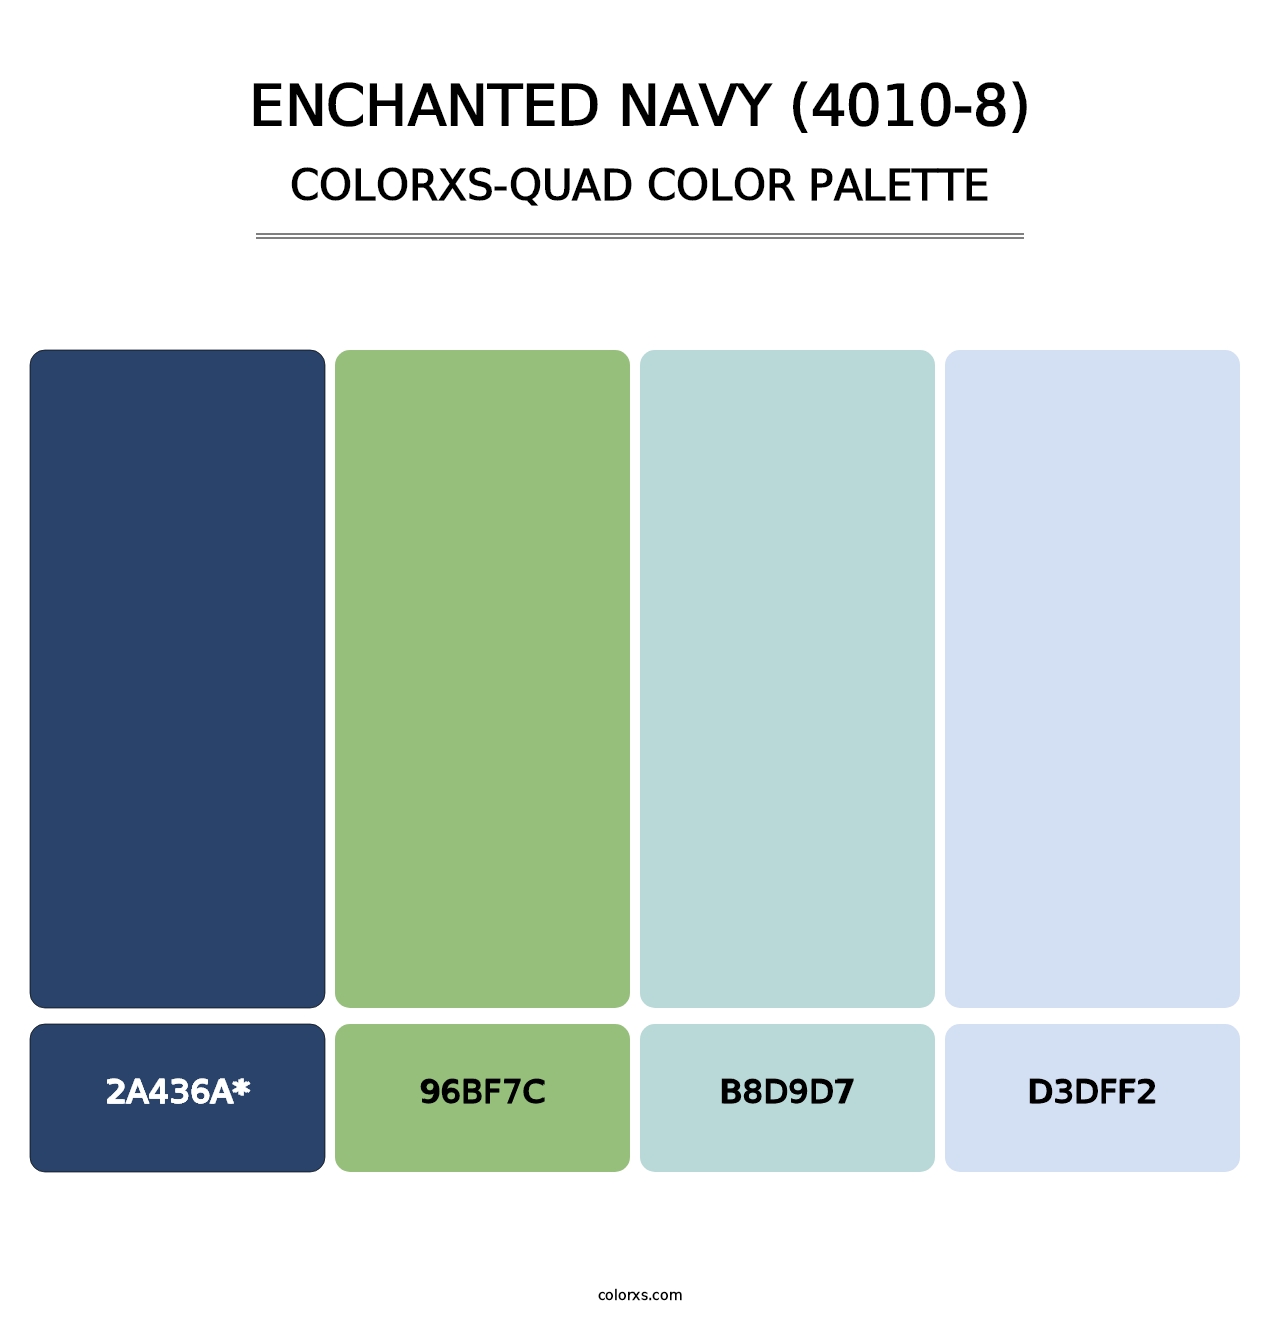 Enchanted Navy (4010-8) - Colorxs Quad Palette